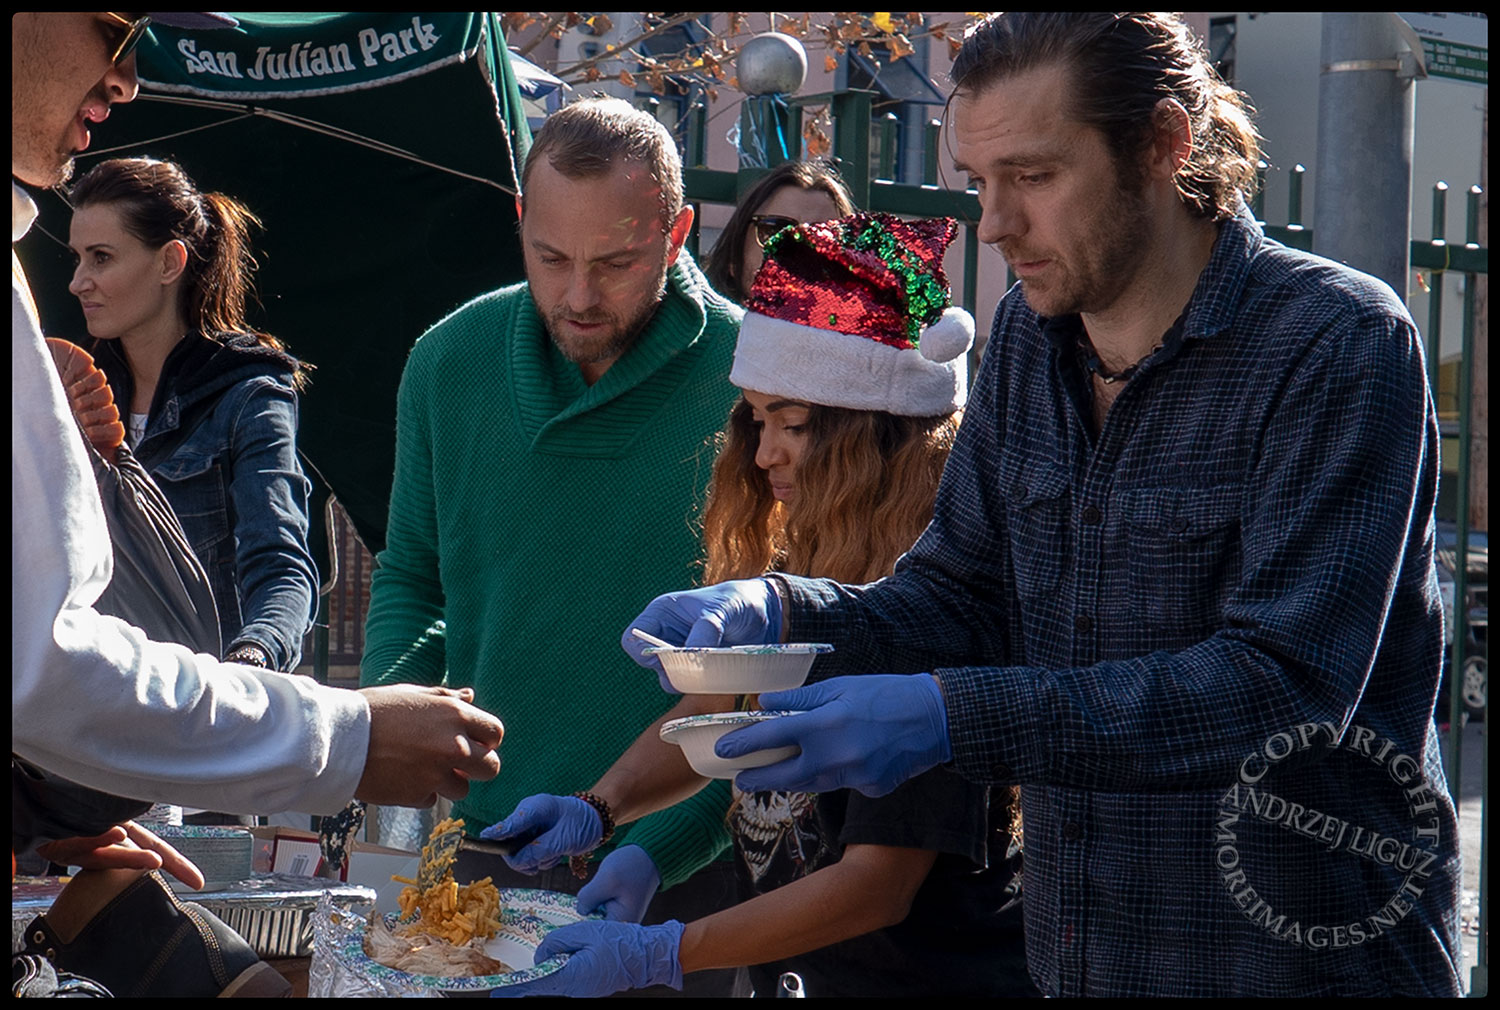 Anisa, Ayler & Naz with Oscar feeding the homeless, San Julian Park, Skid Row, LA, Christmas Day 2018